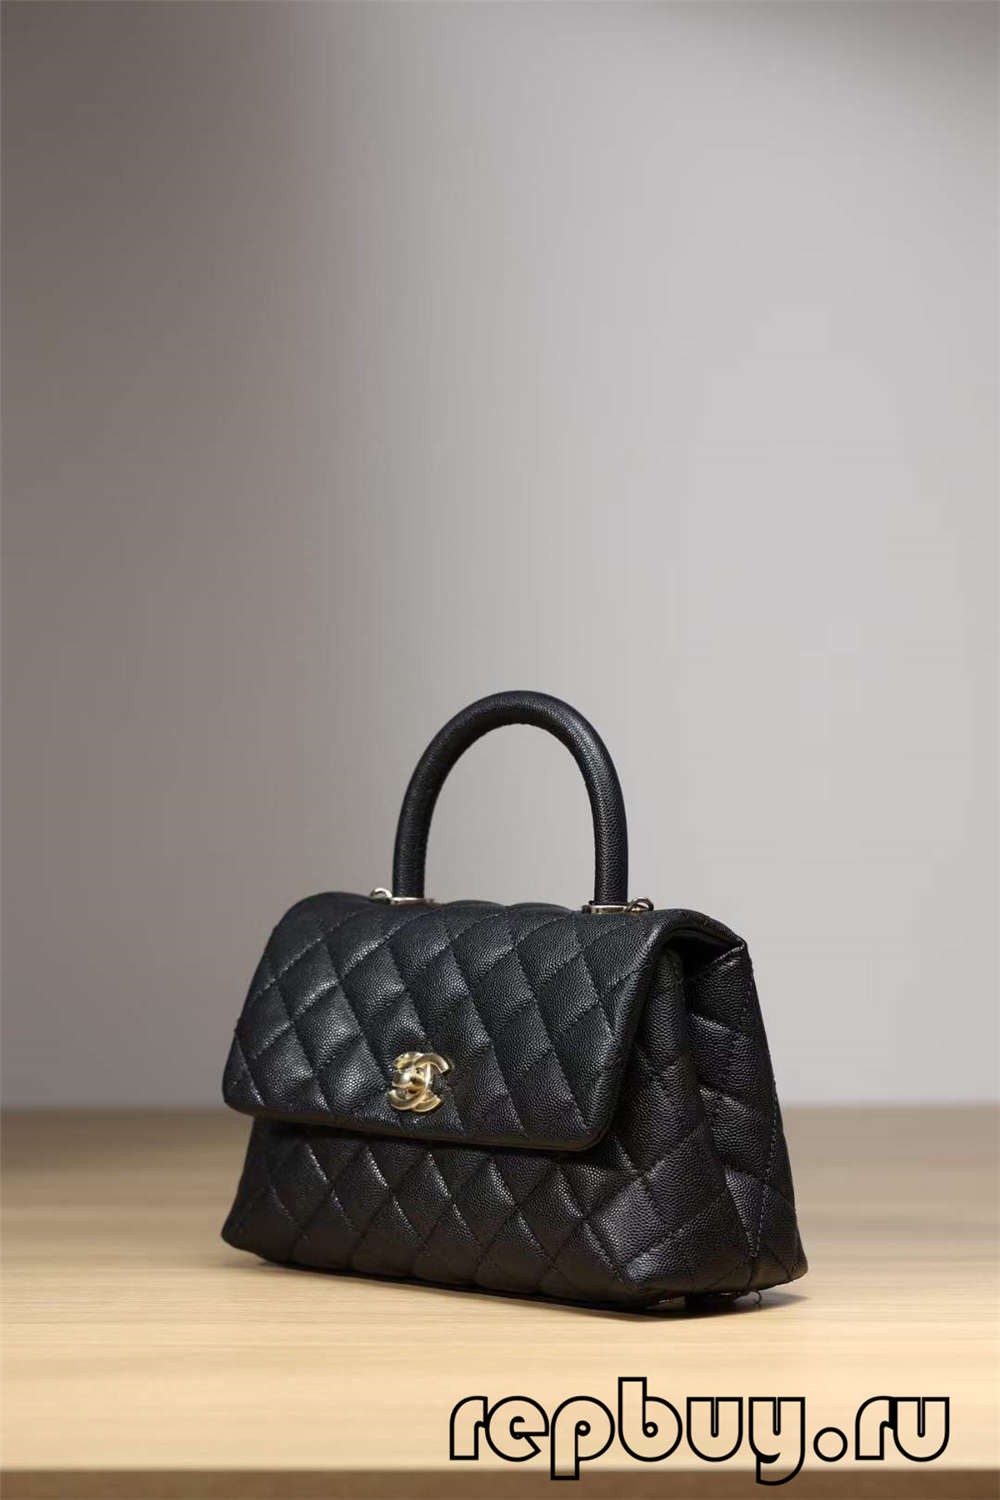 Сумка Chanel Coco Handle Top Replica Black Gold Buckle Look (2022 Оновлено) - Інтернет-магазин підробленої сумки Louis Vuitton найкращої якості, копія дизайнерської сумки ru